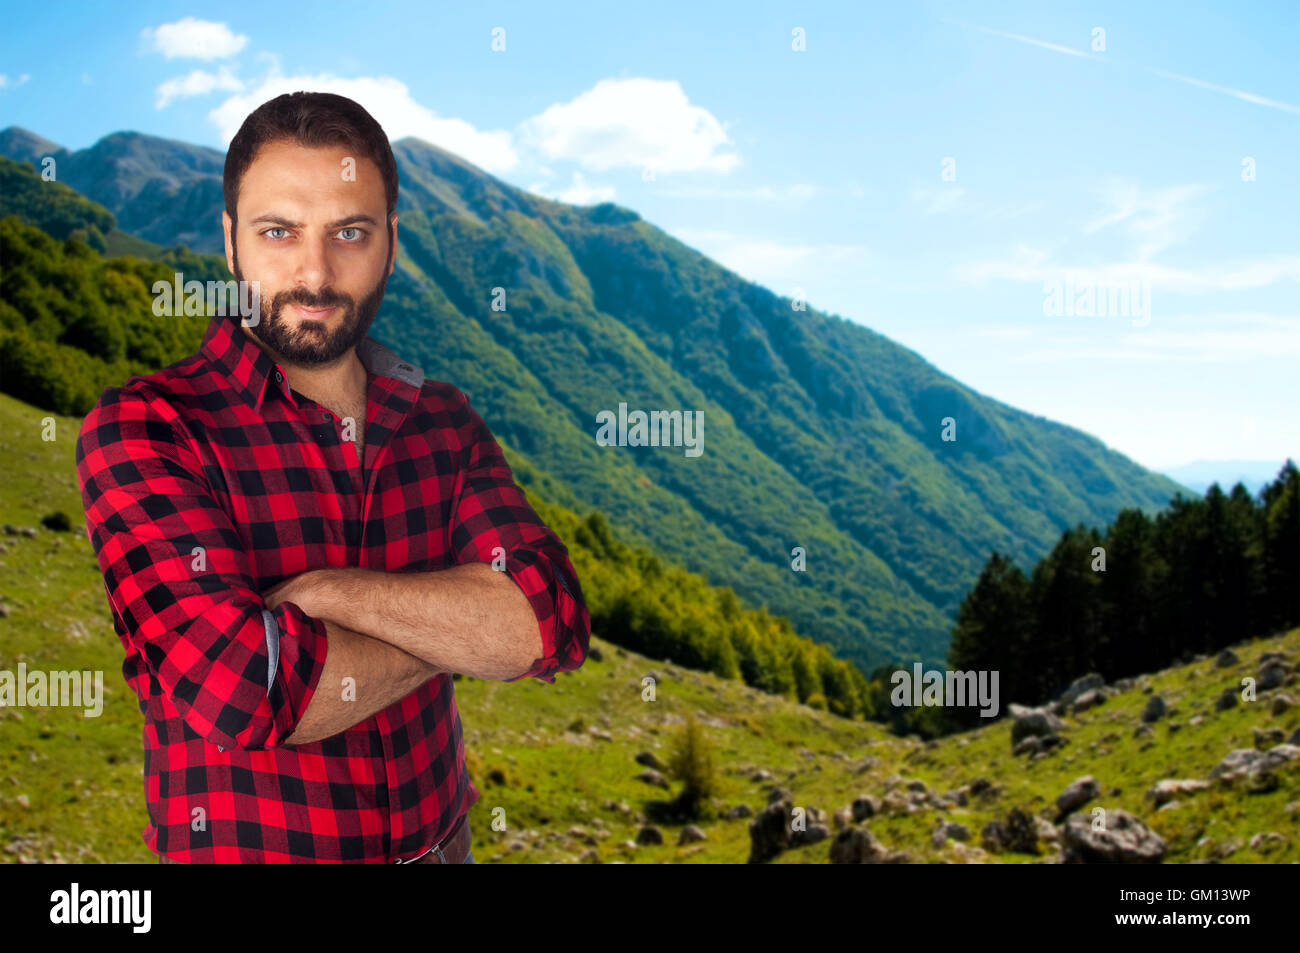 Portrait de l'homme montagne avec chemise à carreaux dans une vallée de haute montagne. Banque D'Images